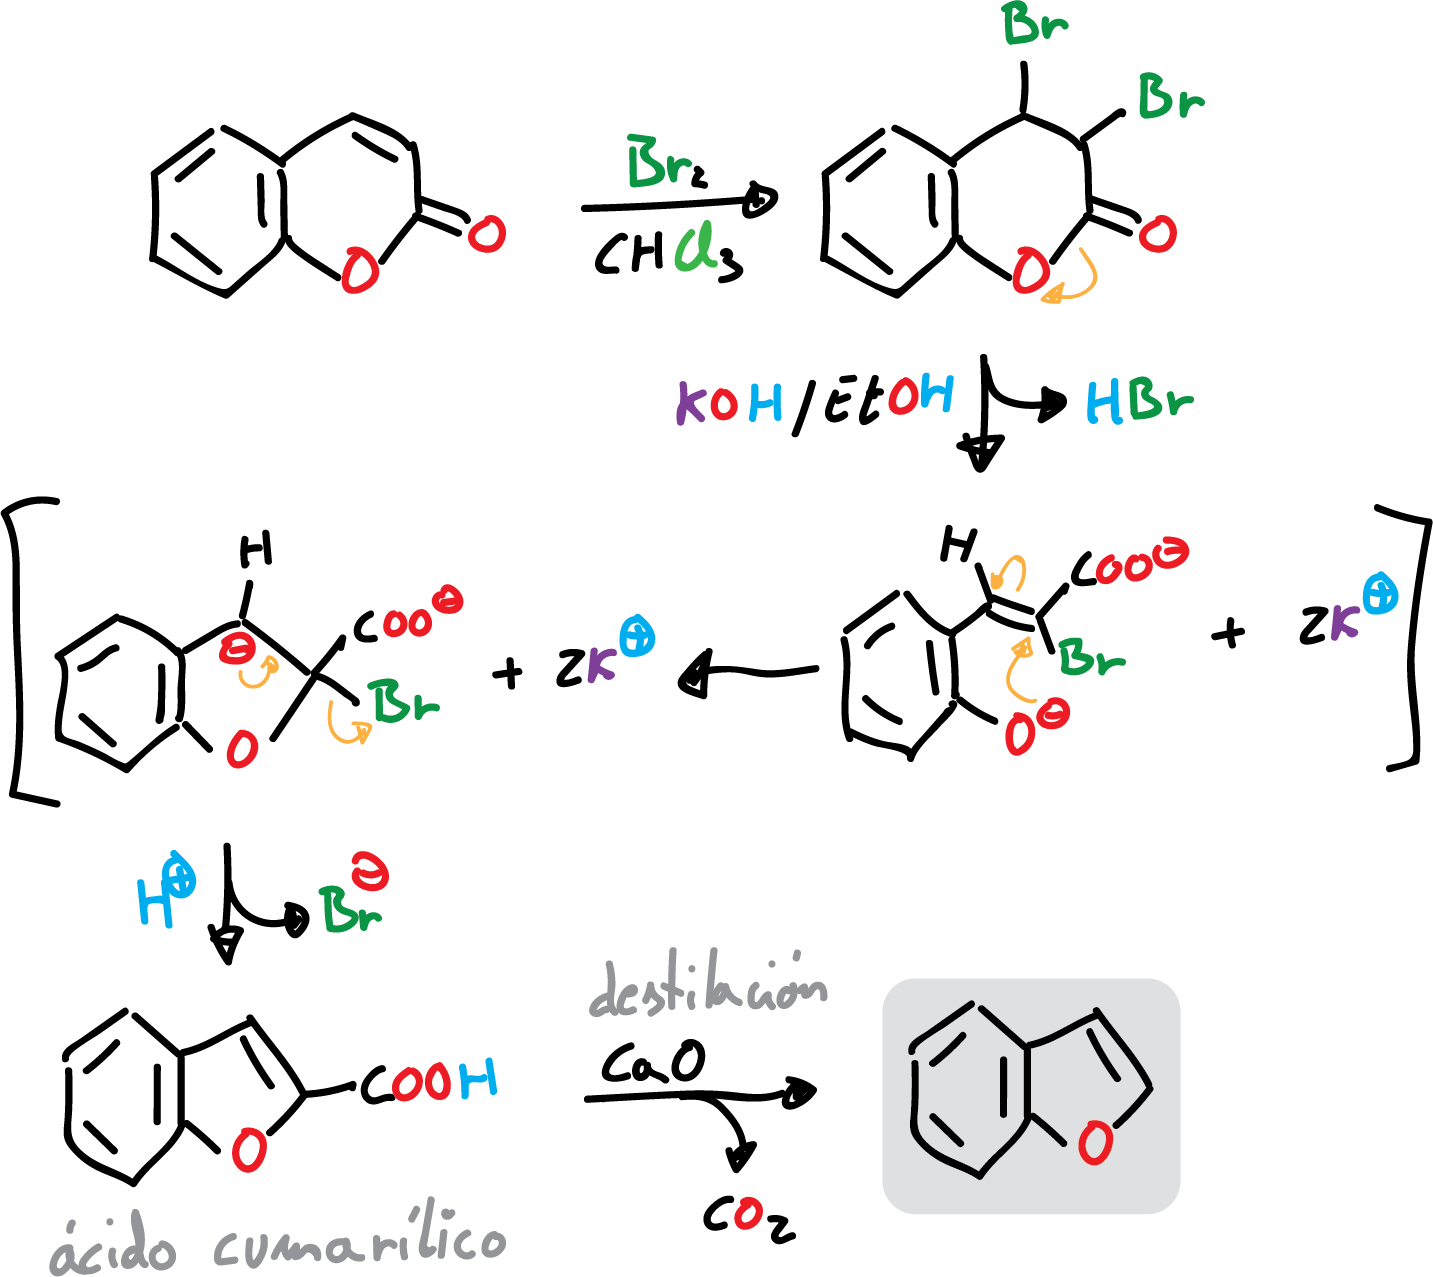 5-membered condensed heterocycles